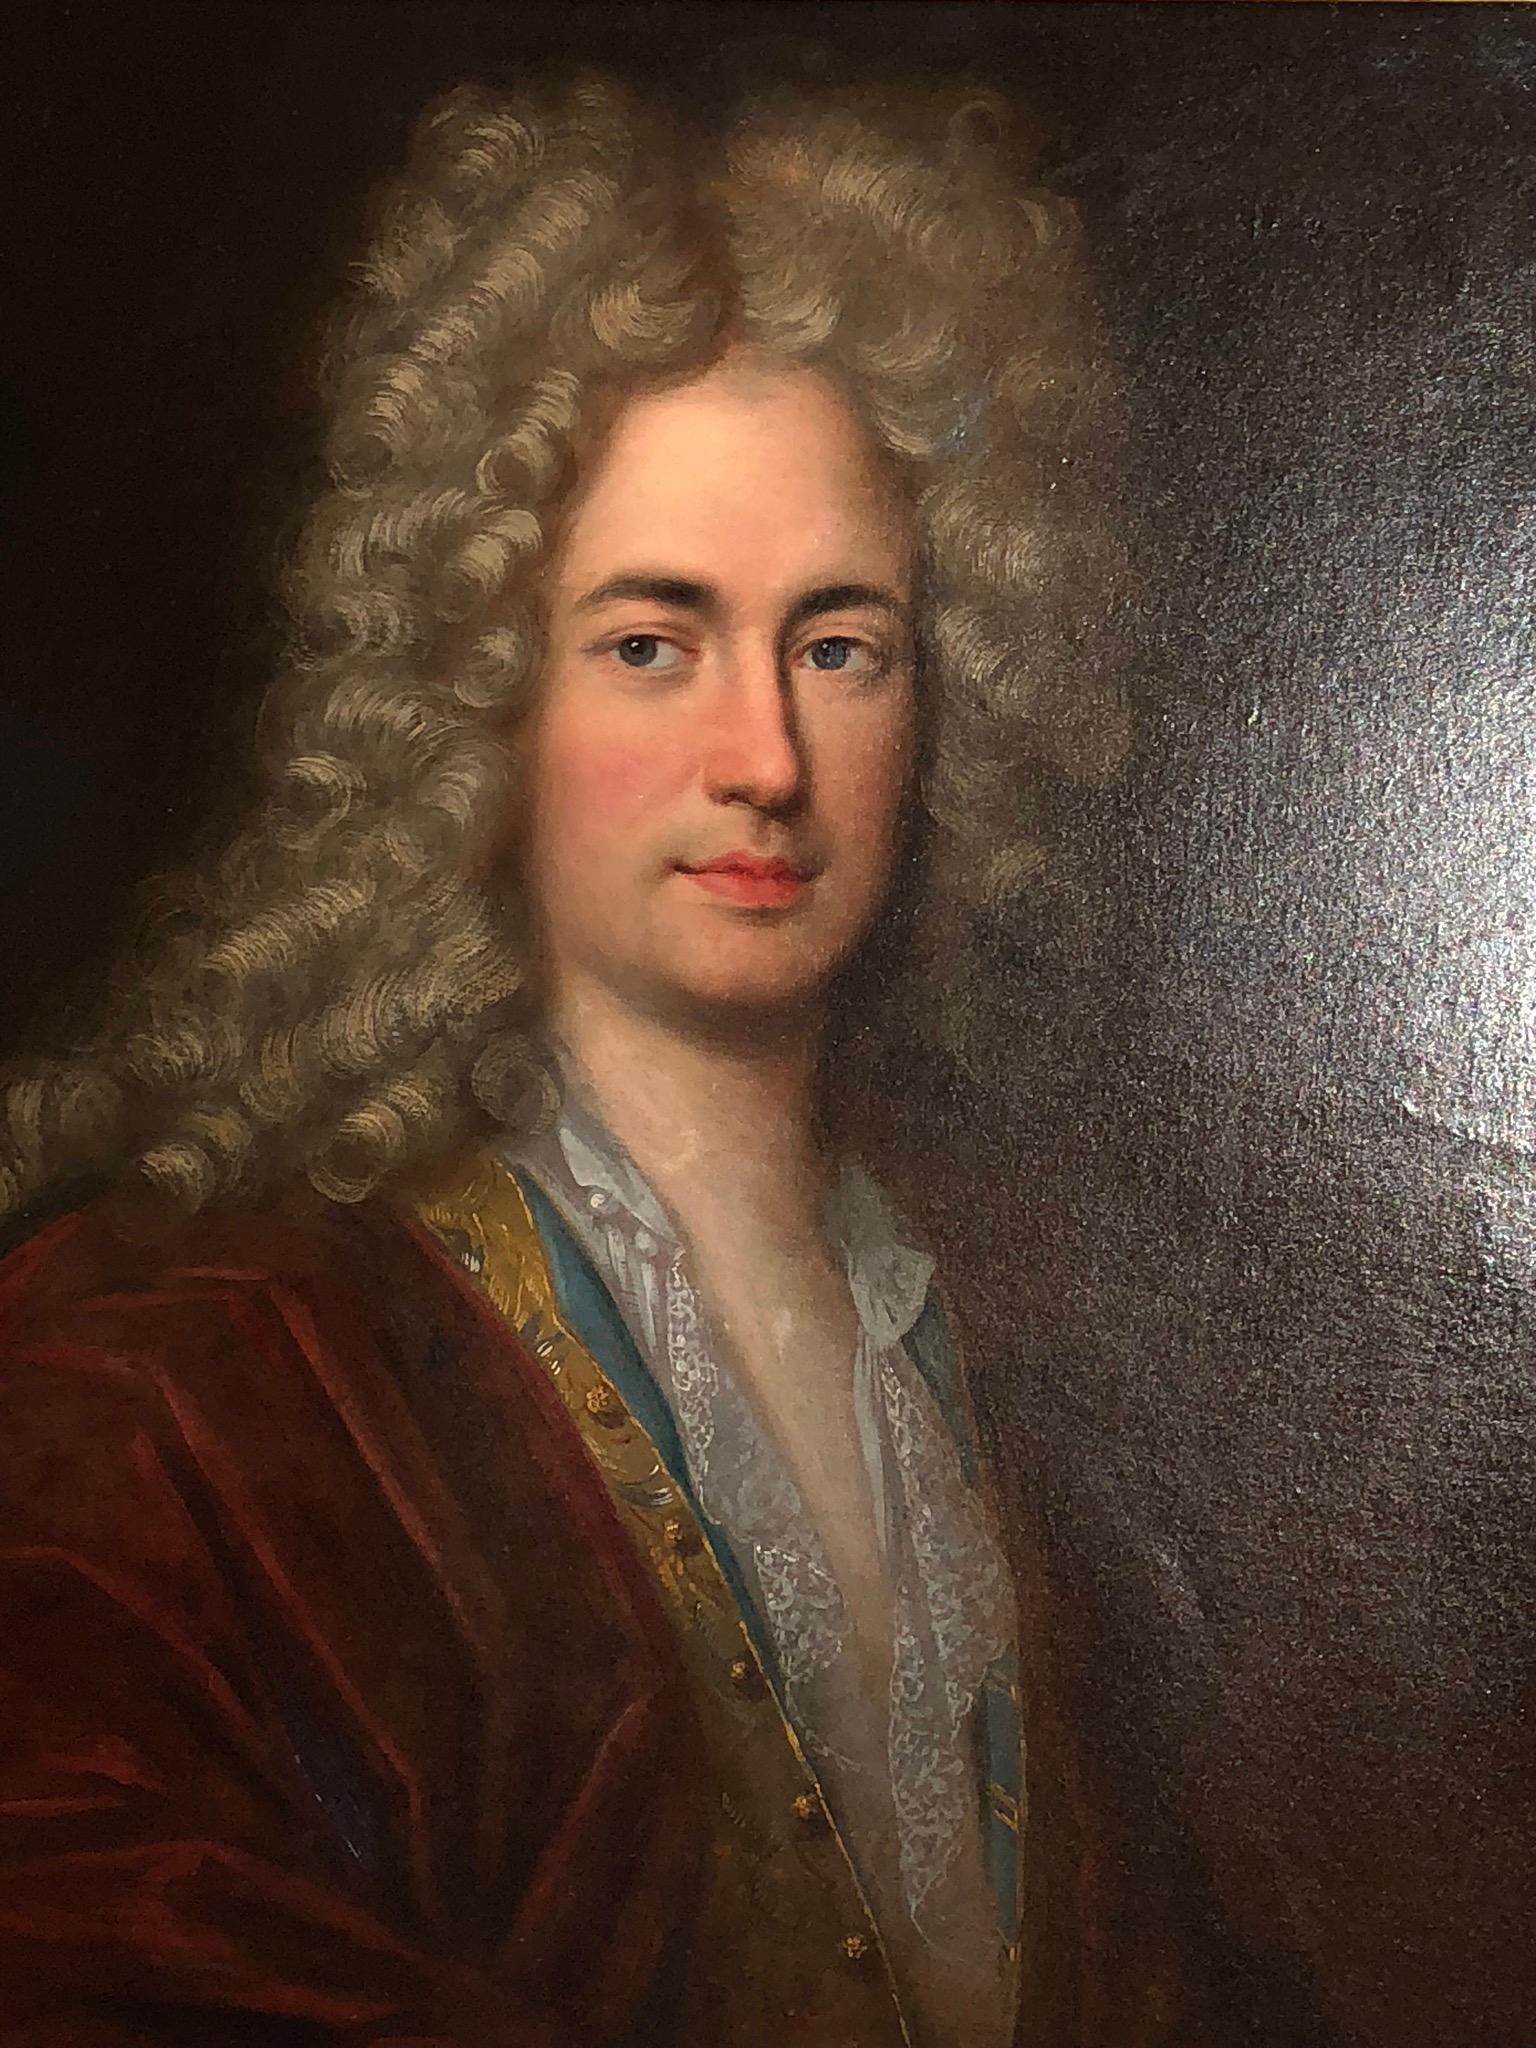 18th century aristocrat